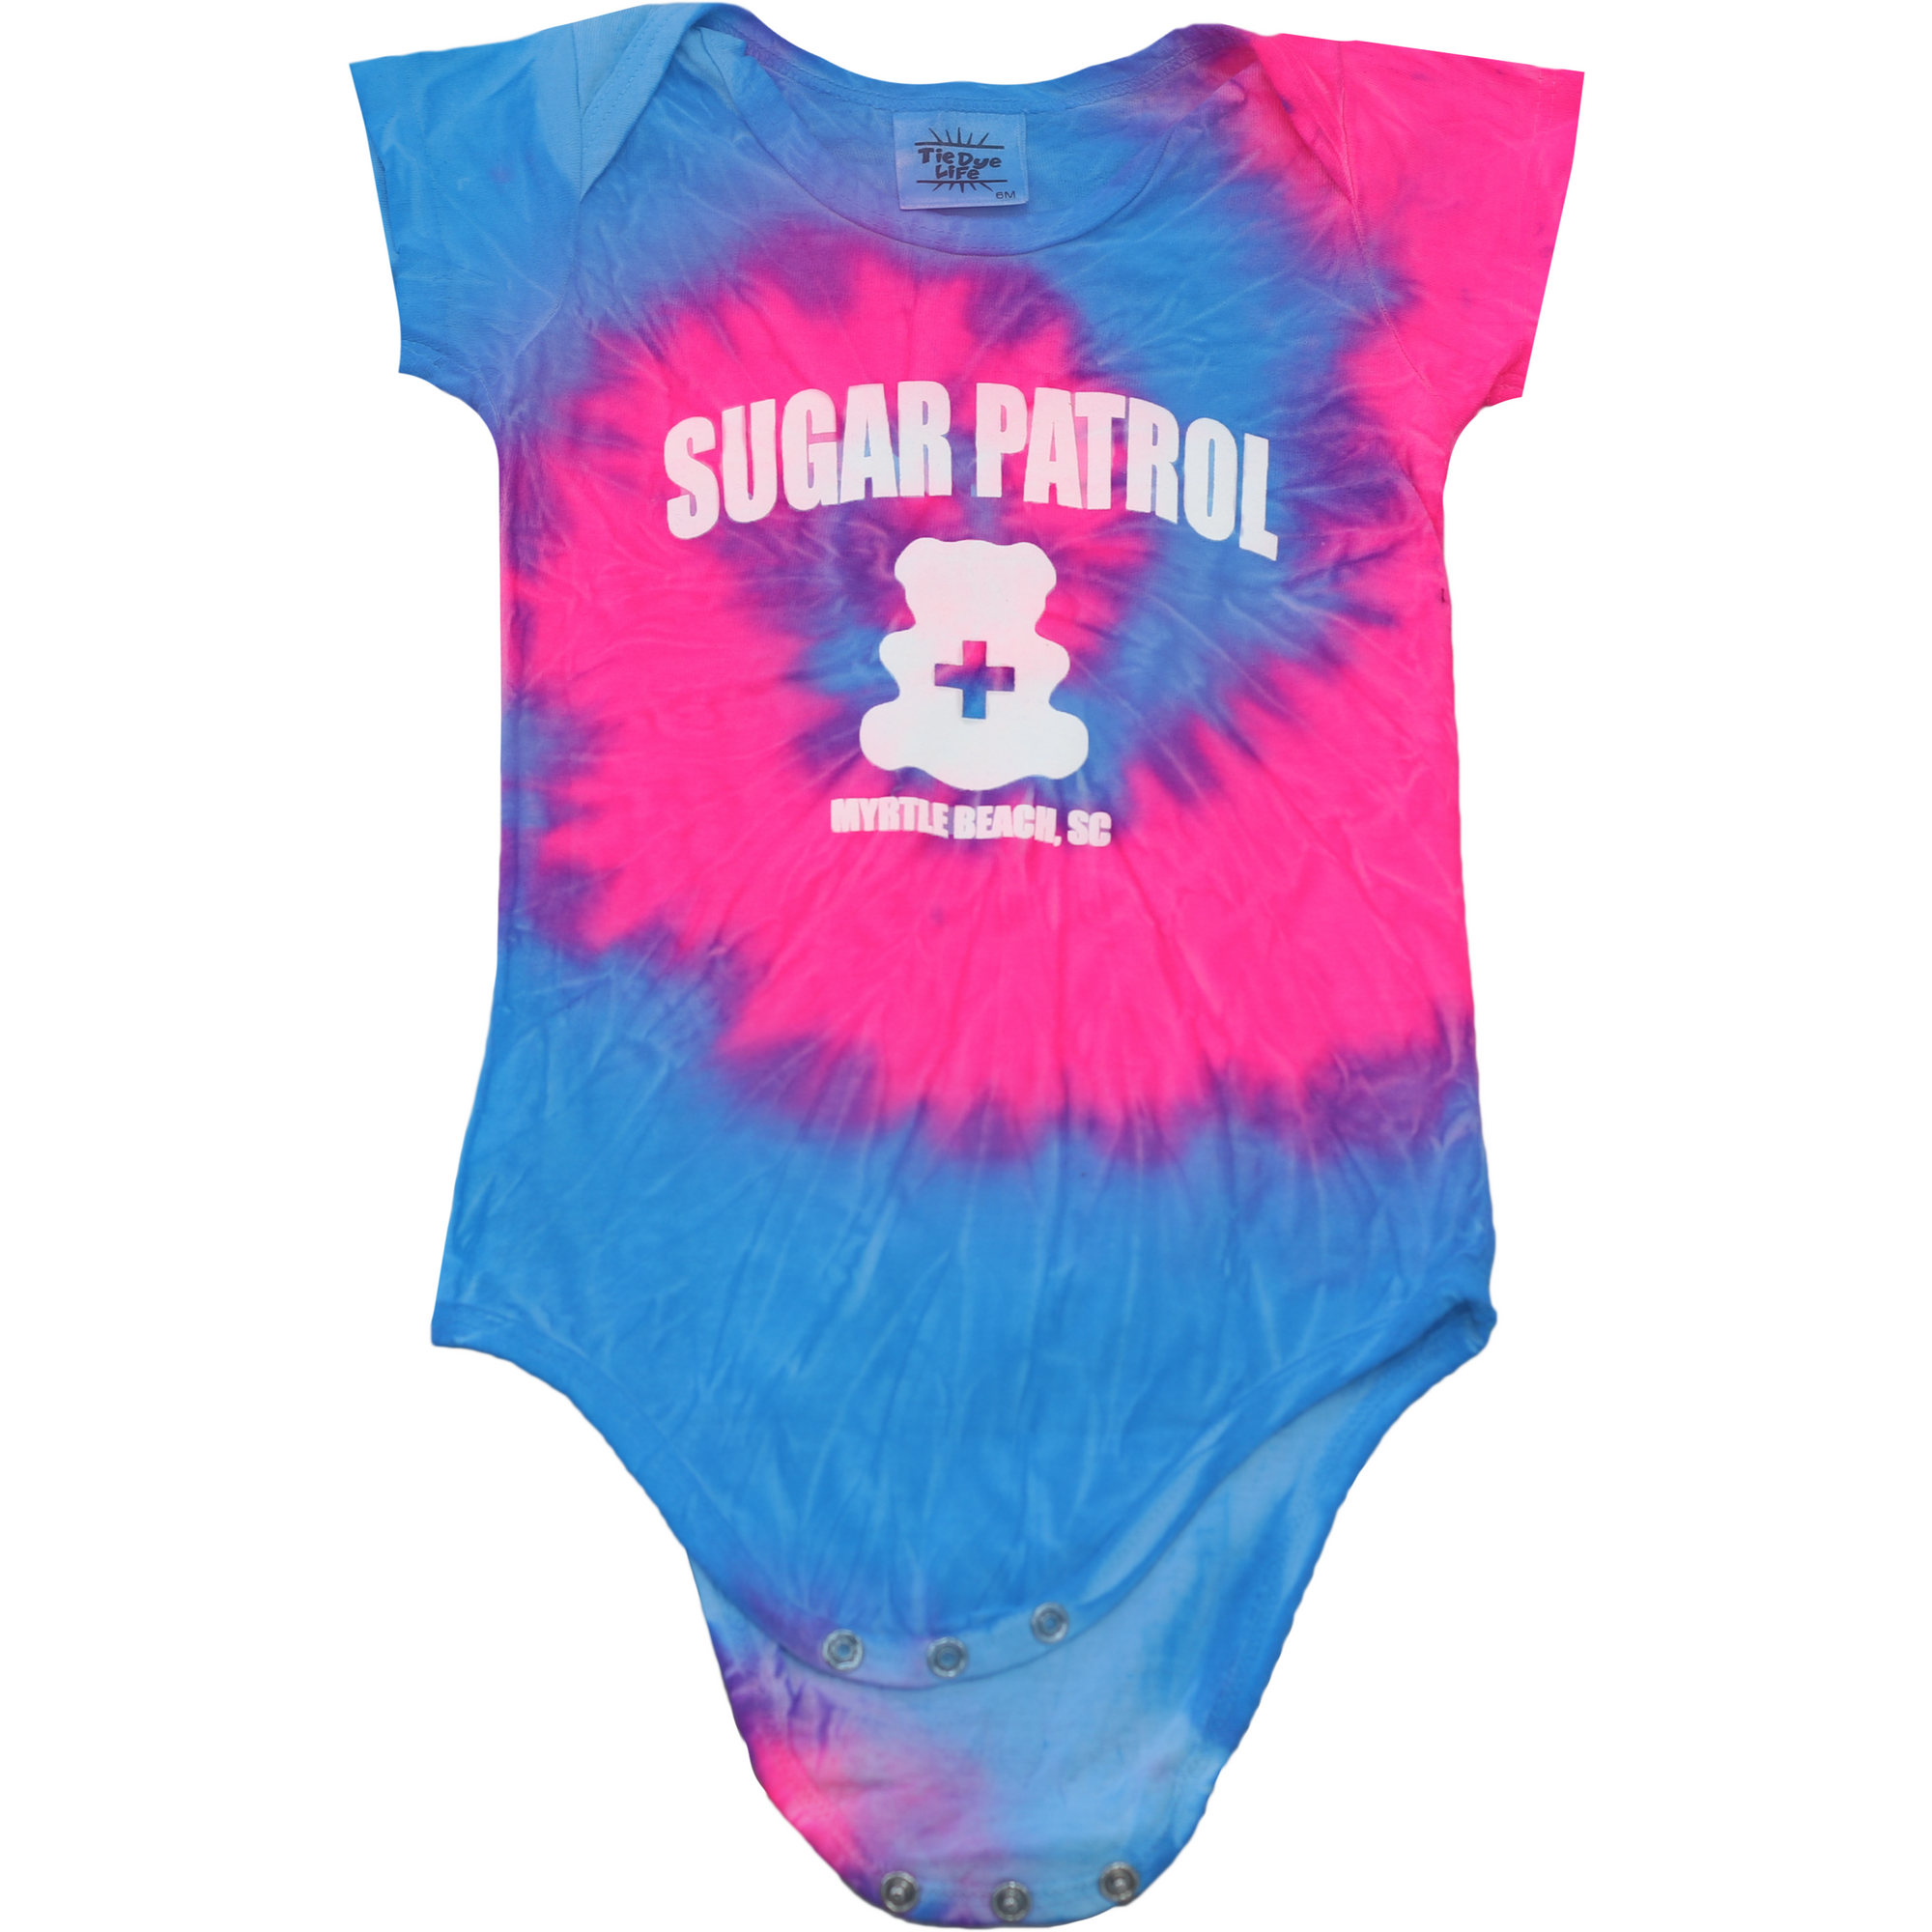 Sugar Patrol Infant Onesie - Pink & Blue Cotton Candy Tie Dye